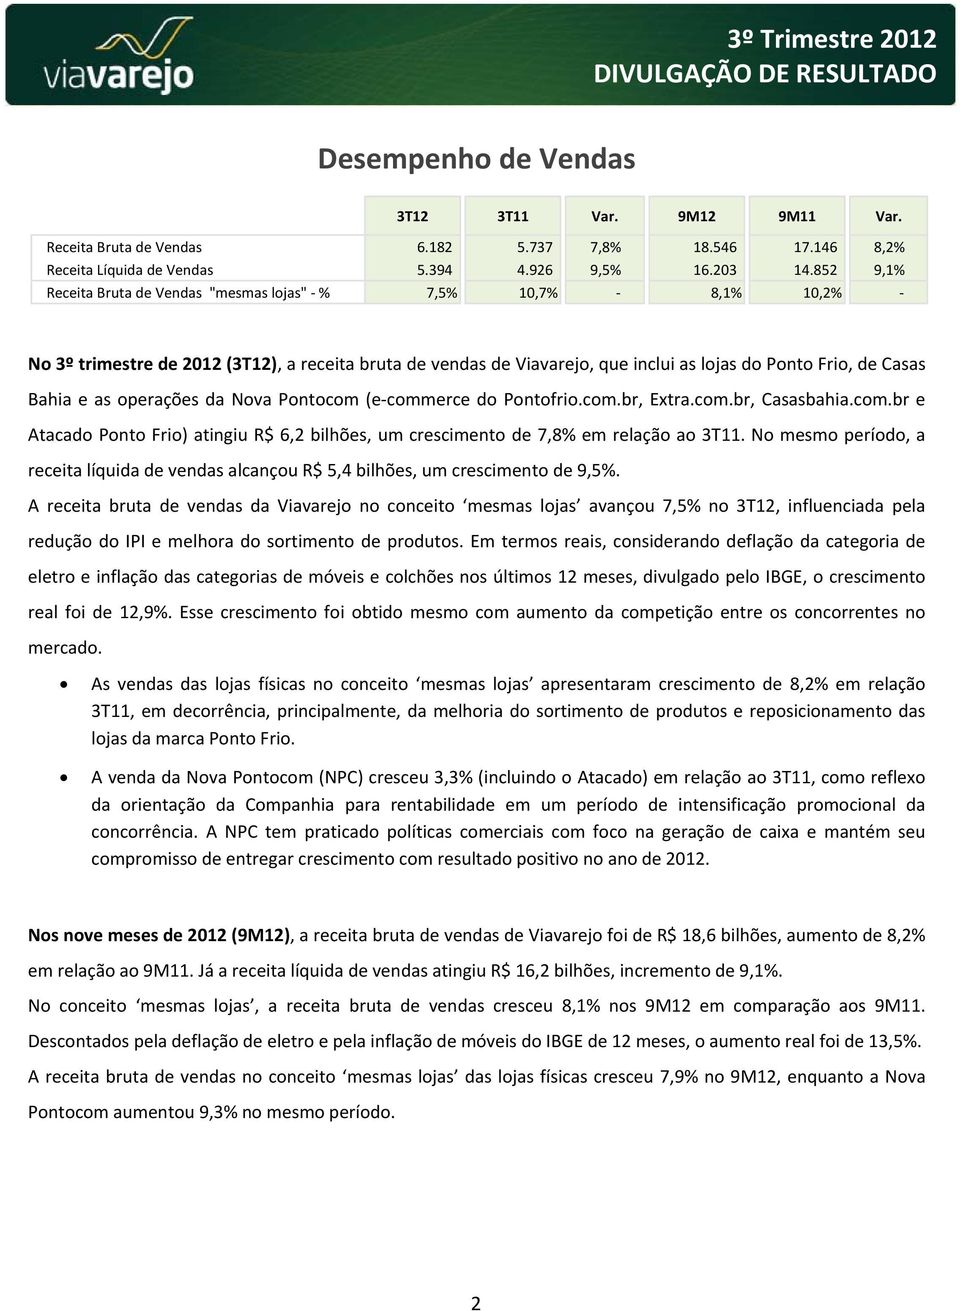 operações da Nova Pontocom (e commerce do Pontofrio.com.br, Extra.com.br, Casasbahia.com.br e Atacado Ponto Frio) atingiu R$ 6,2 bilhões, um crescimento de 7,8% em relação ao 3T11.